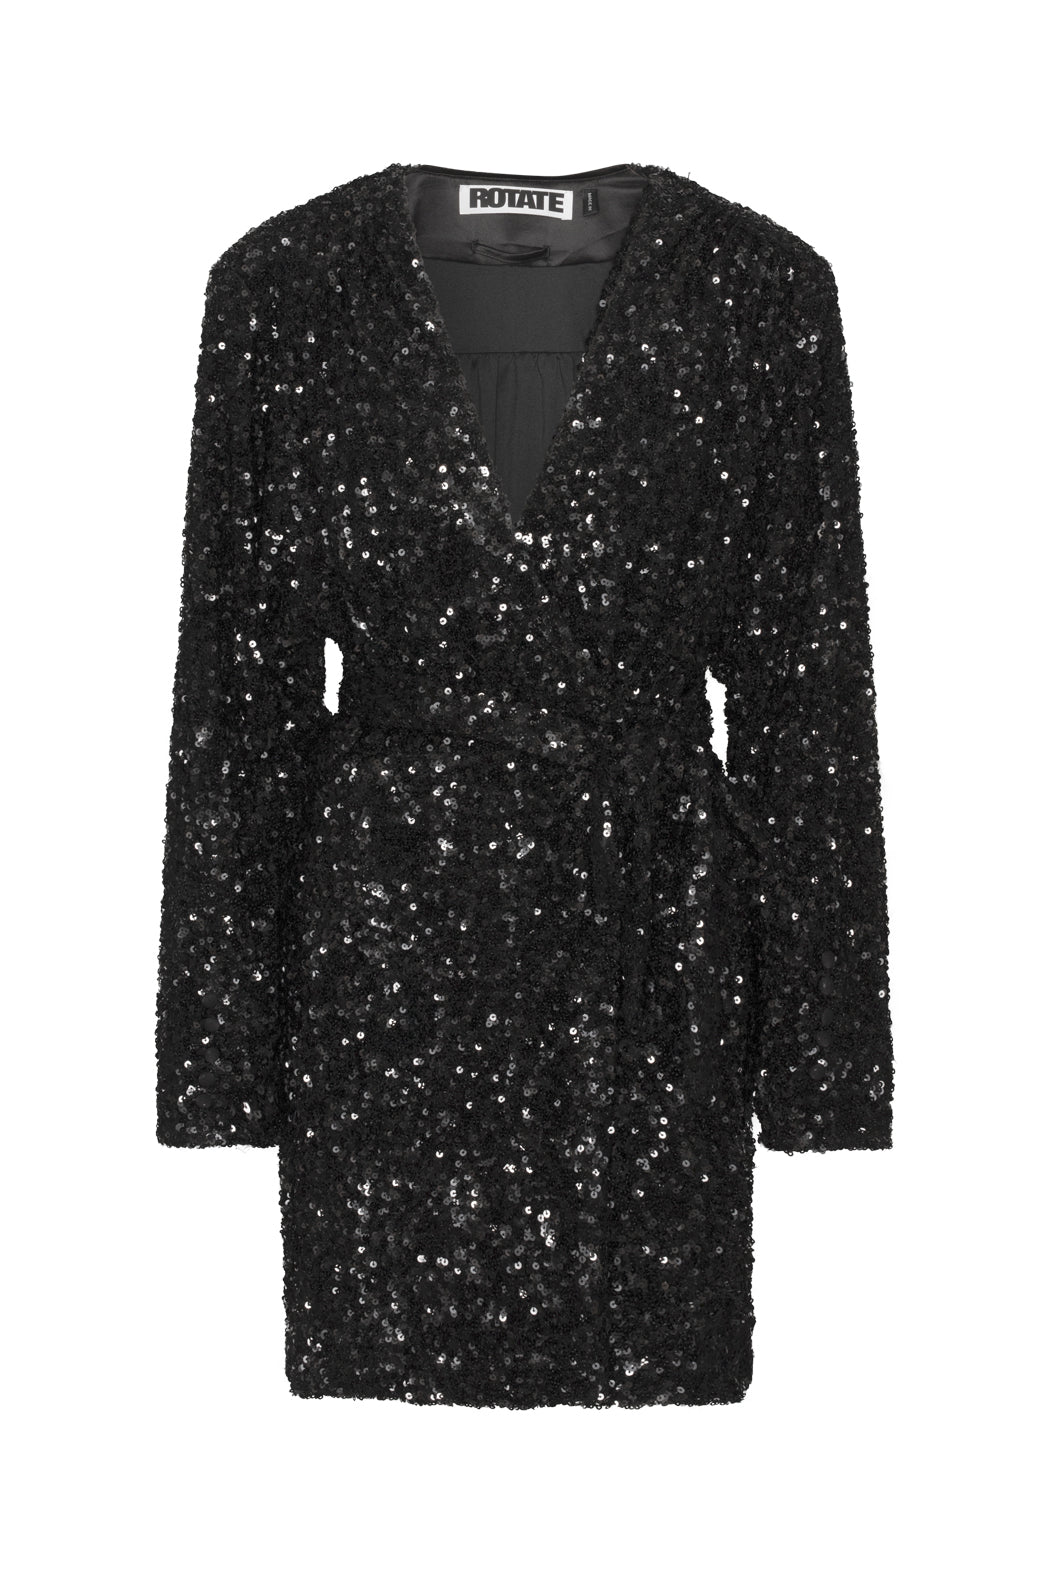 Sequin-embellished wrap minidress, black